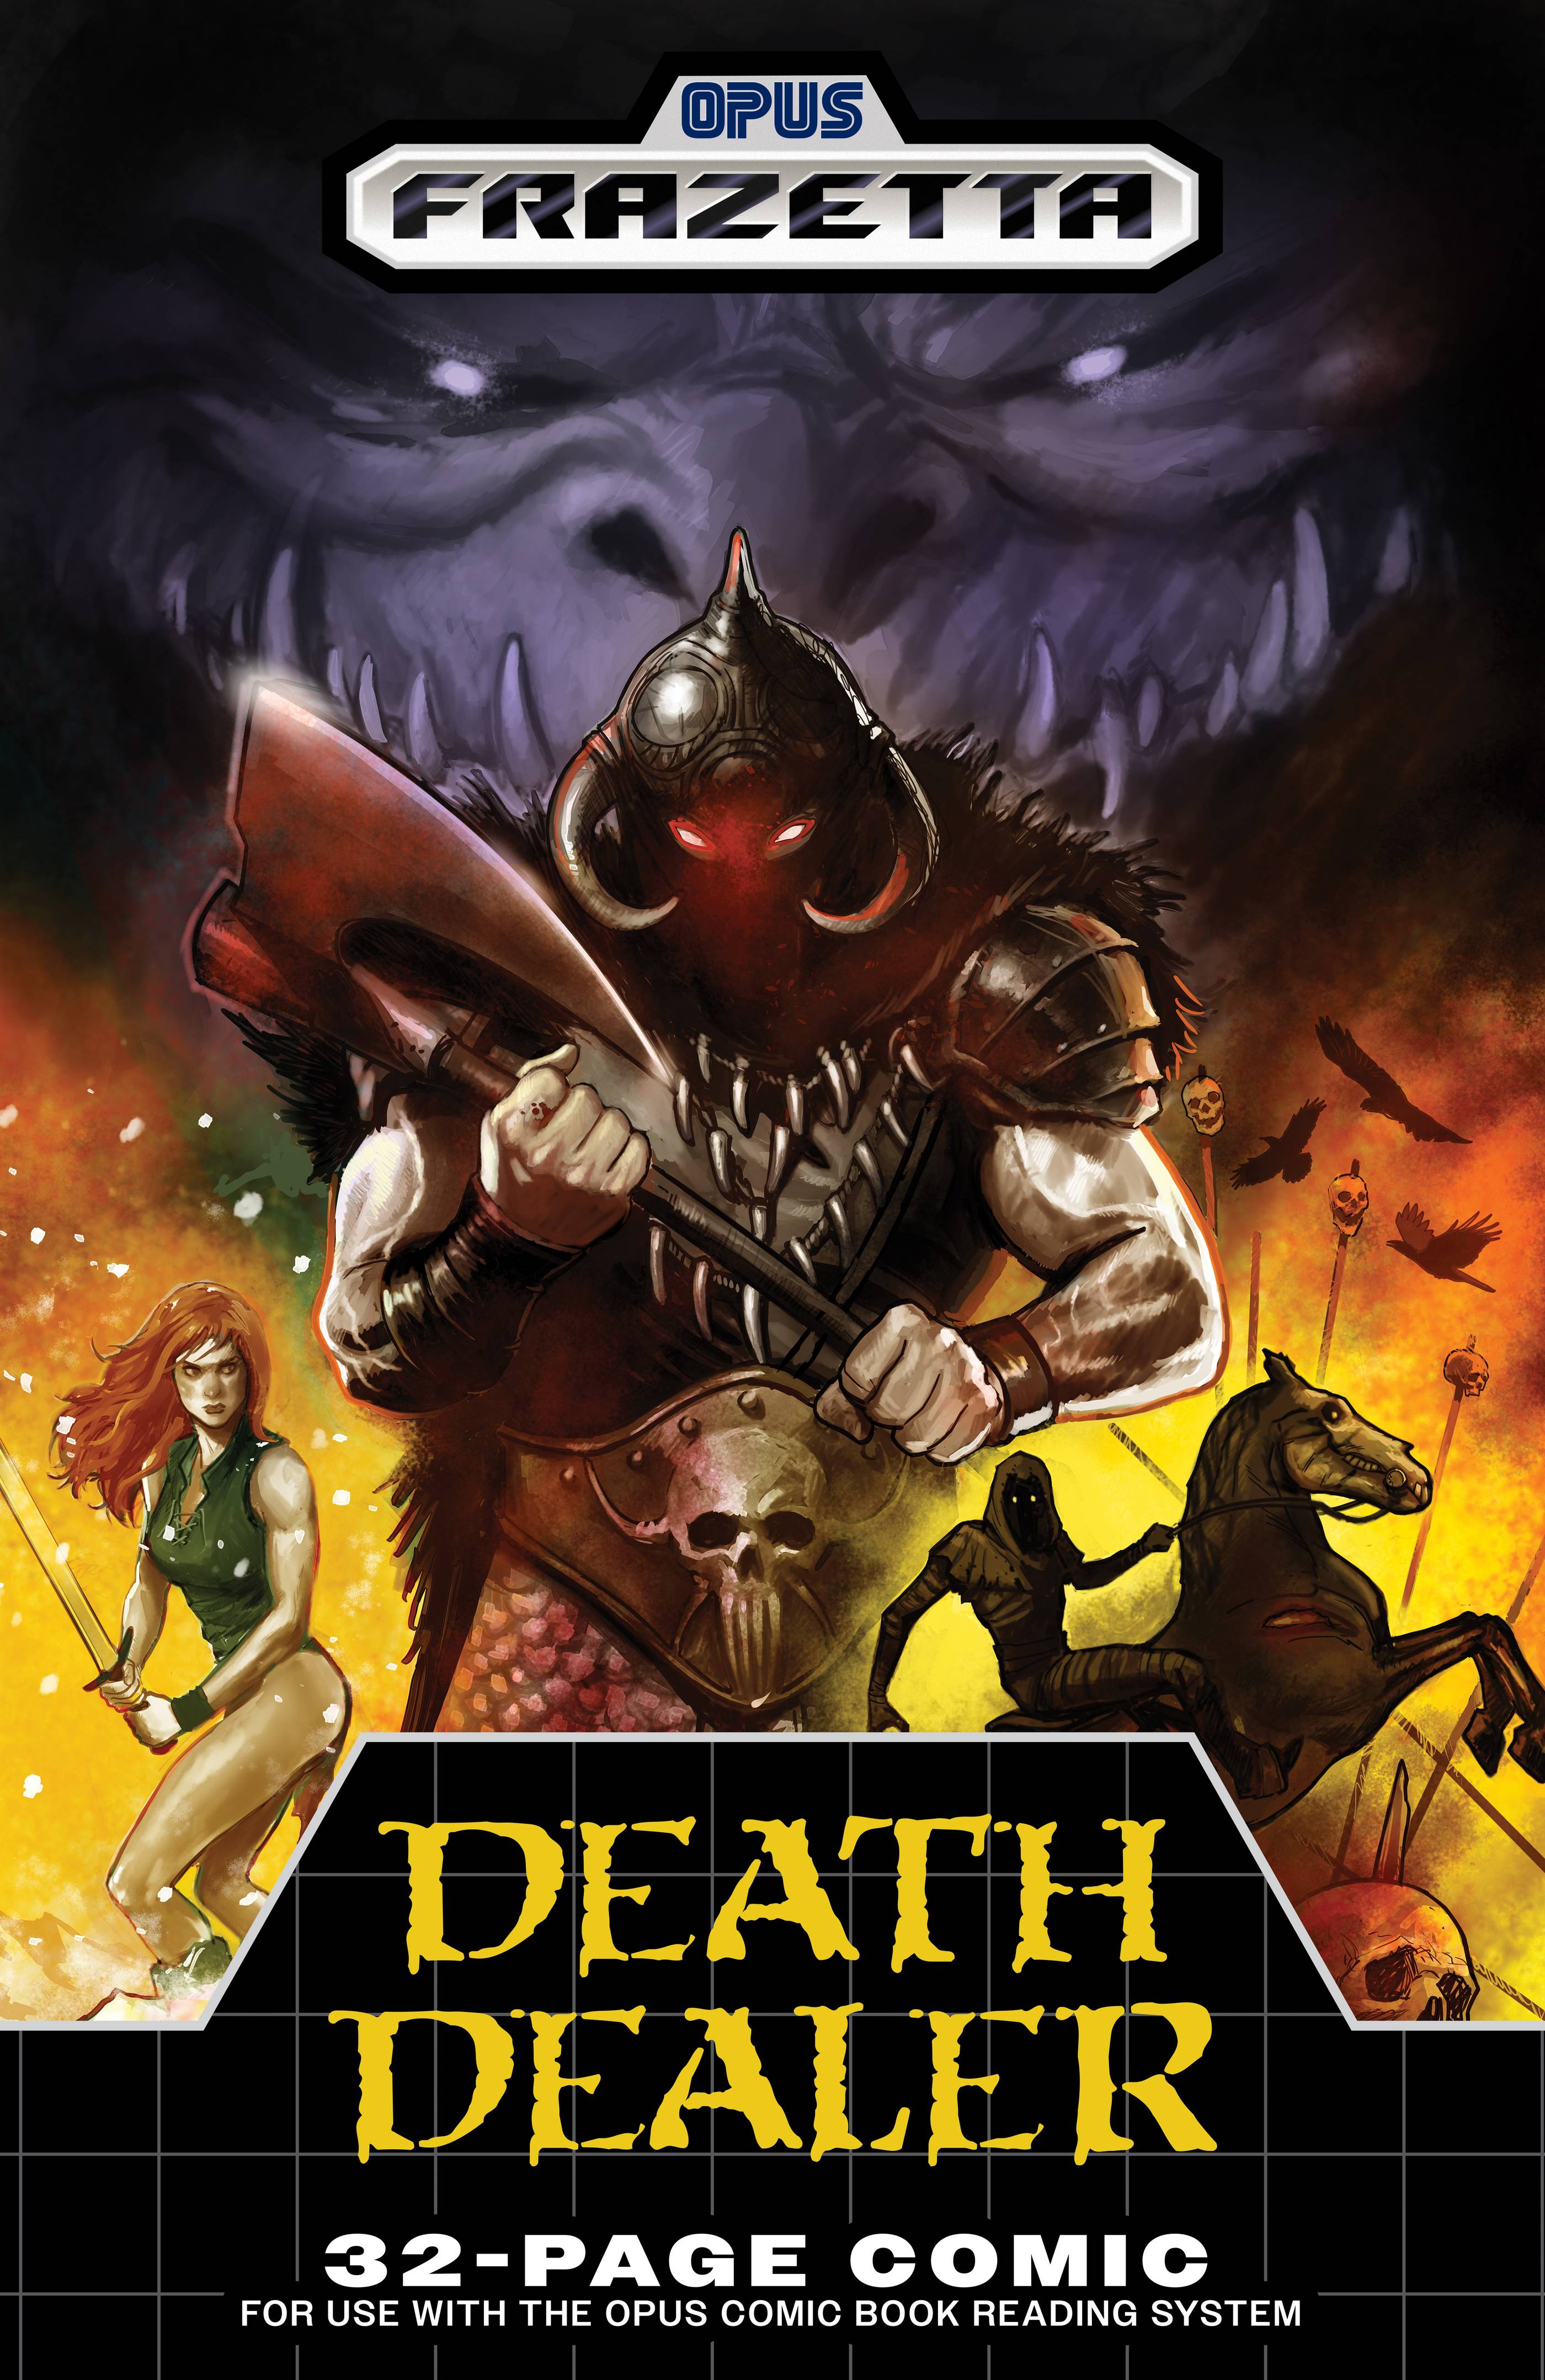 Frank Frazetta Death Dealer #4 Cover C 1 for 5 Incentive Video Game Homage